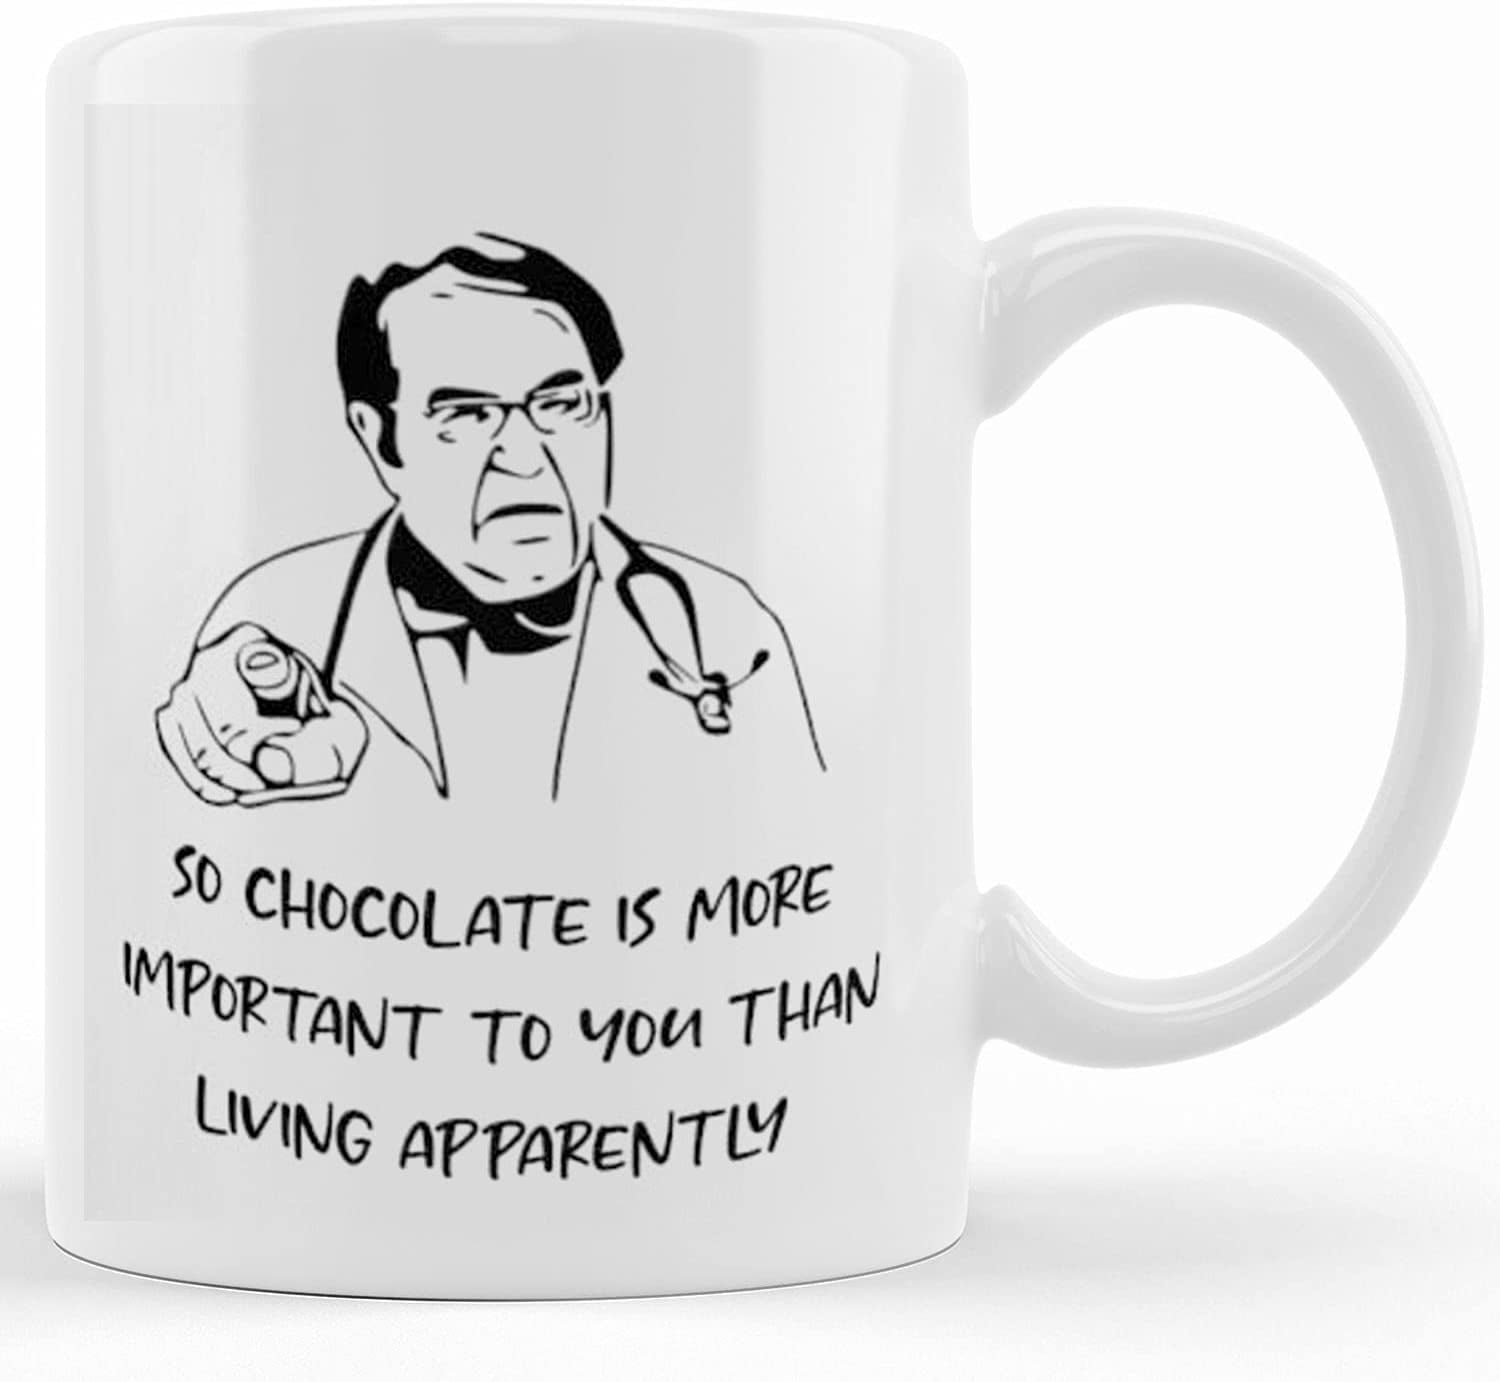 DR NOWZARADAN - Funny Quote - Ceramic Mug 11oz